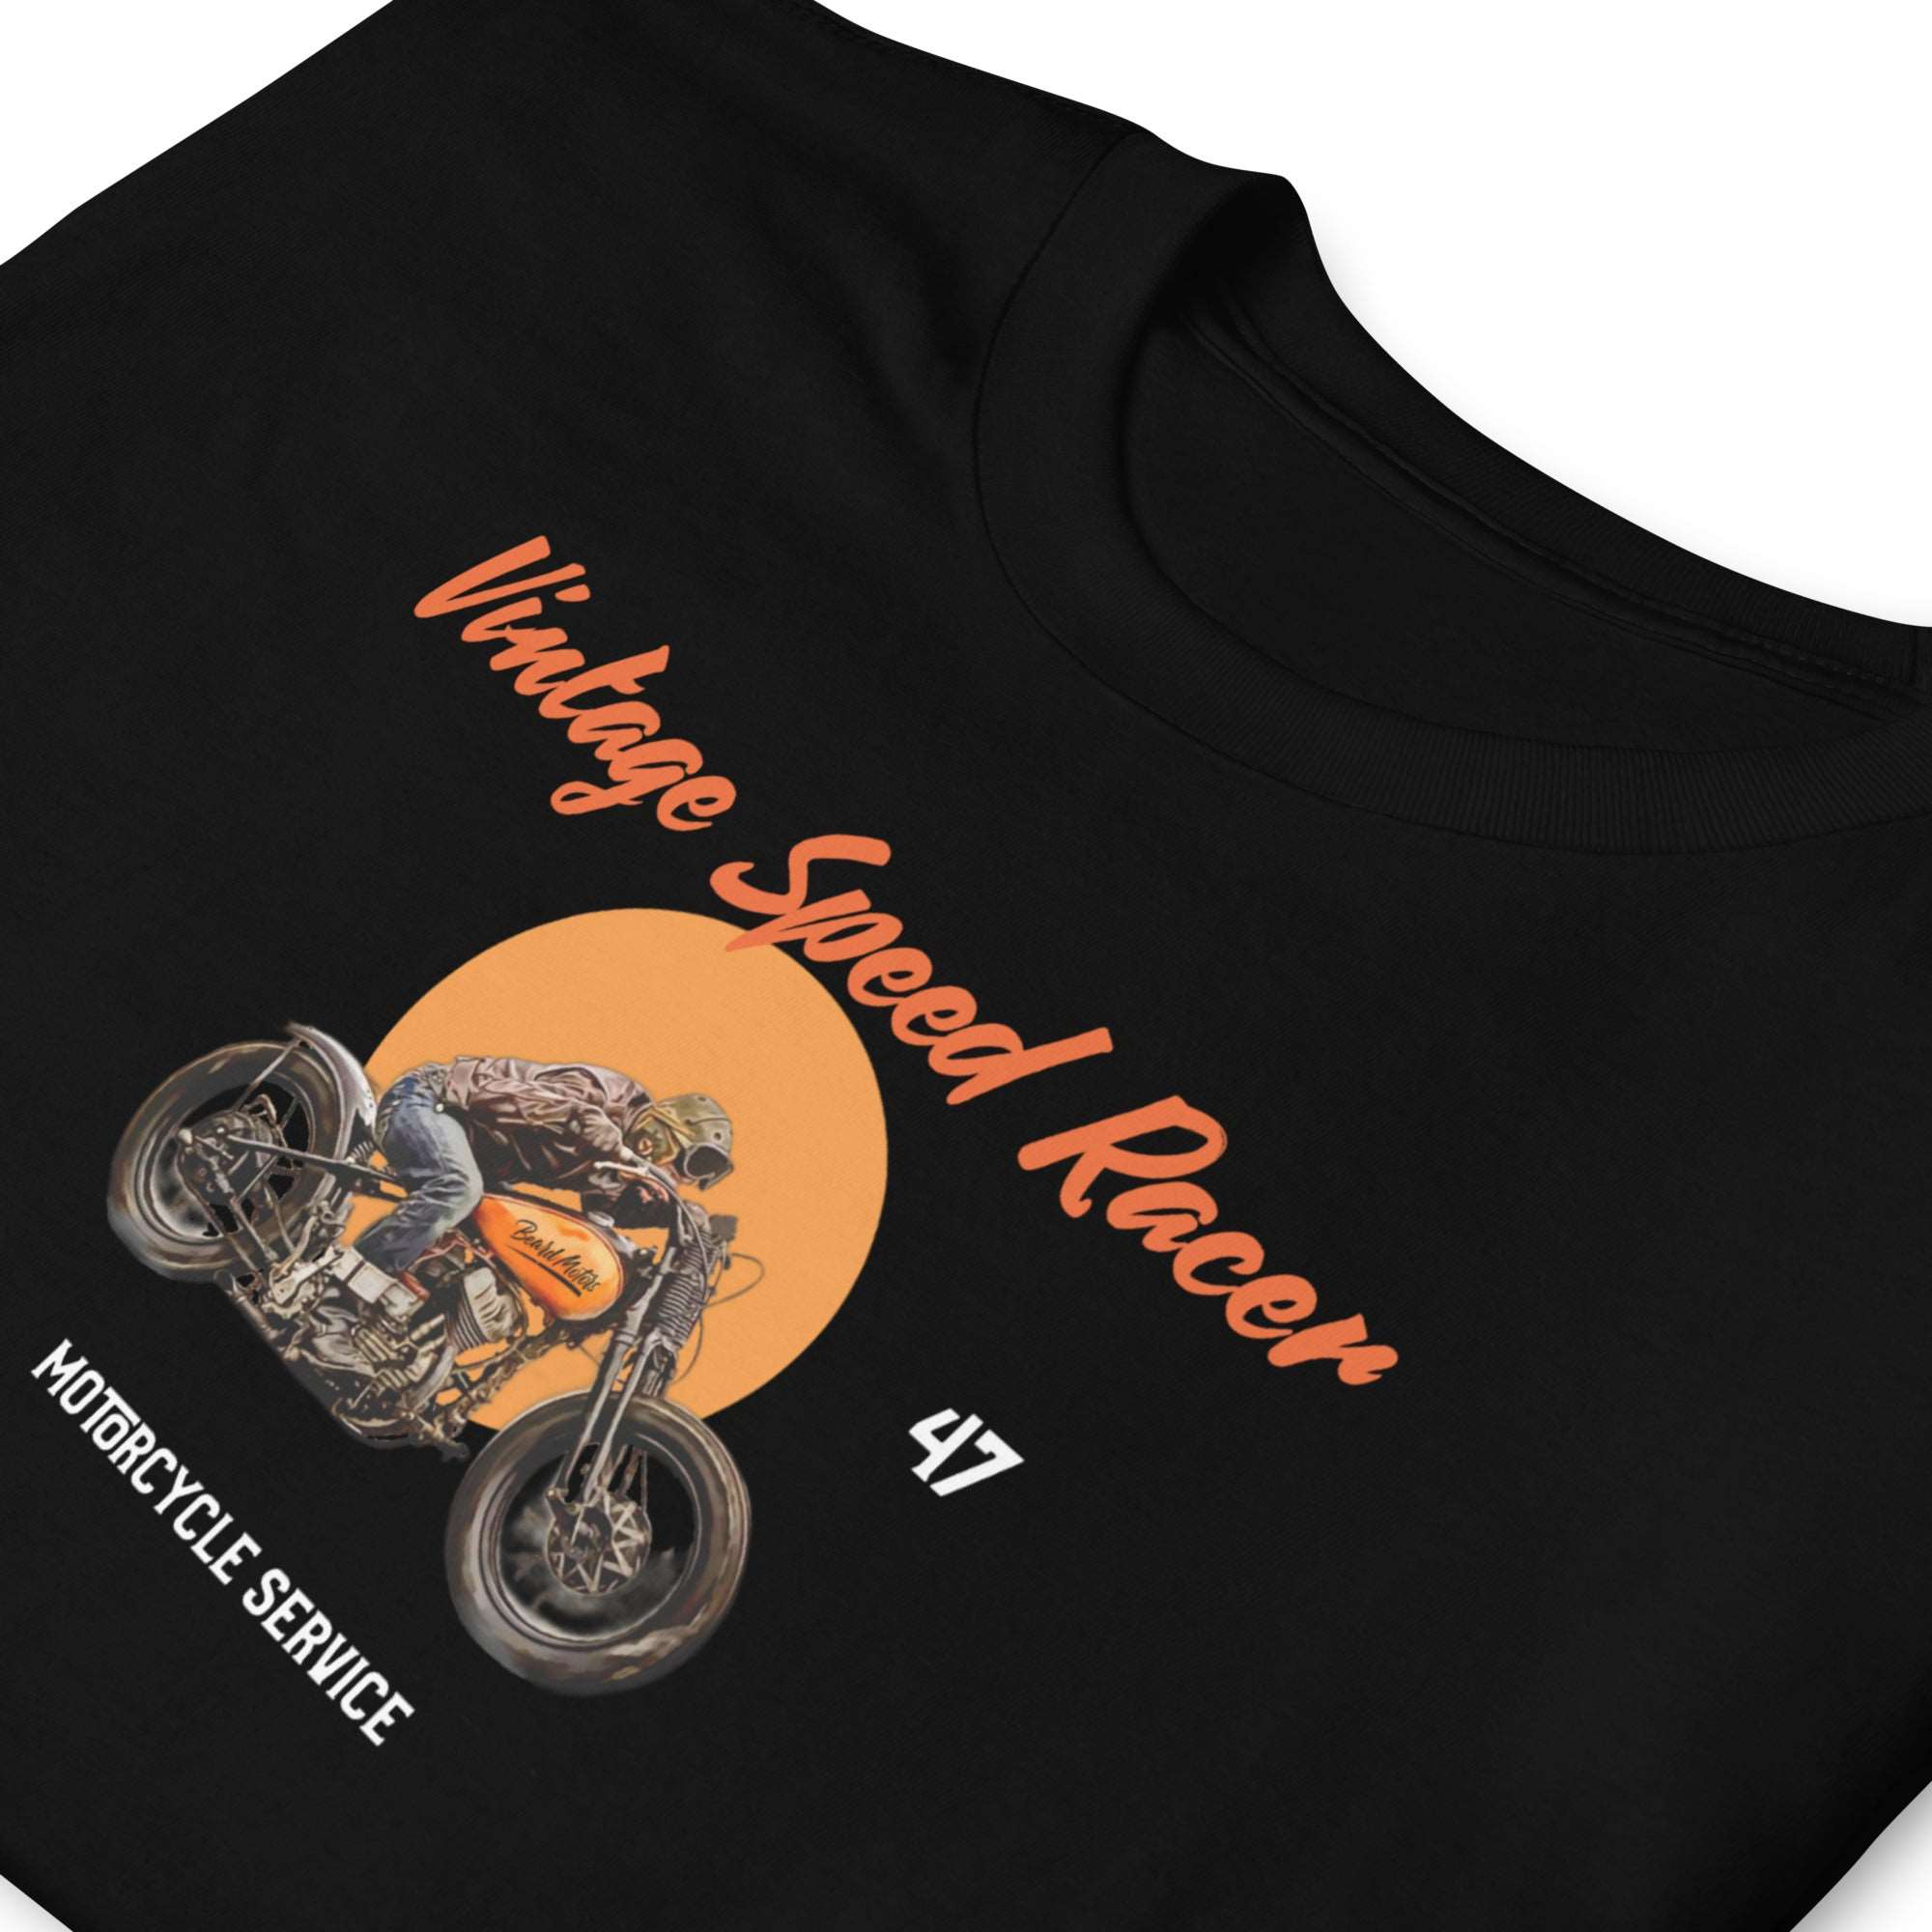 Beard Motors Vintage Speed Racer Motorcycle T-Shirt Black